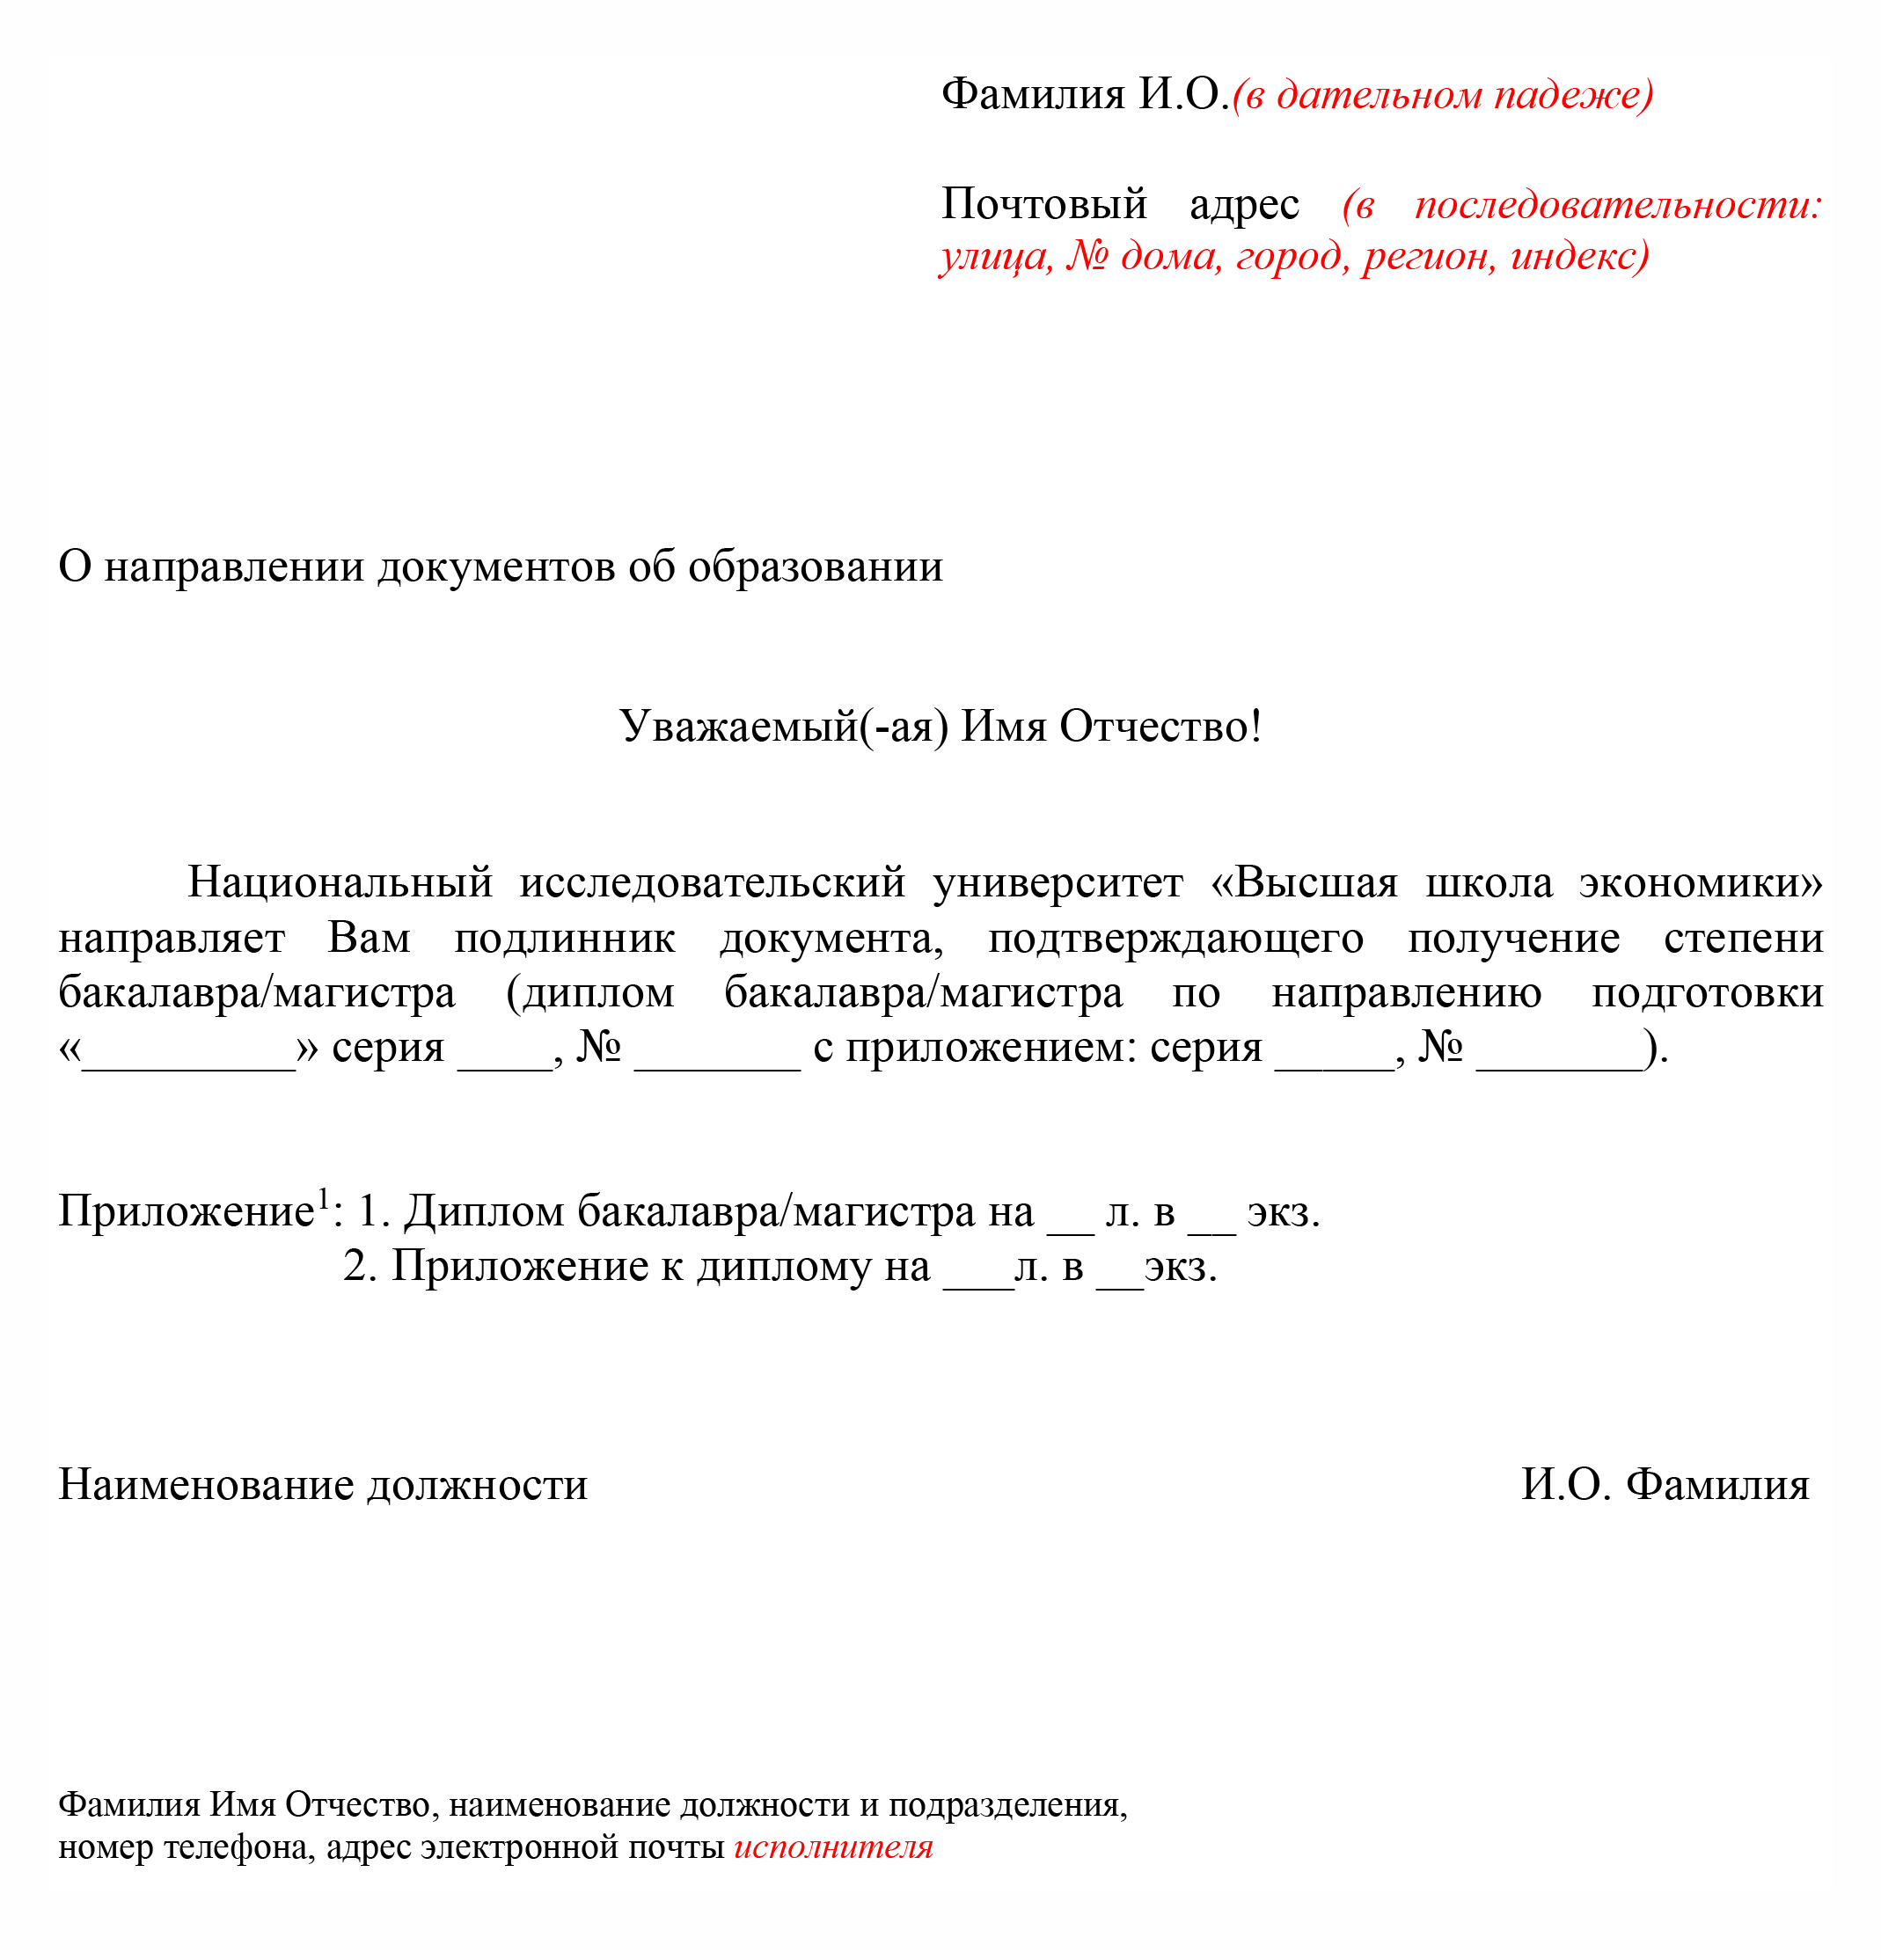 Шаблон сопроводительного письма к диплому выпускнику НИУ ВШЭ. Источник: hse.ru